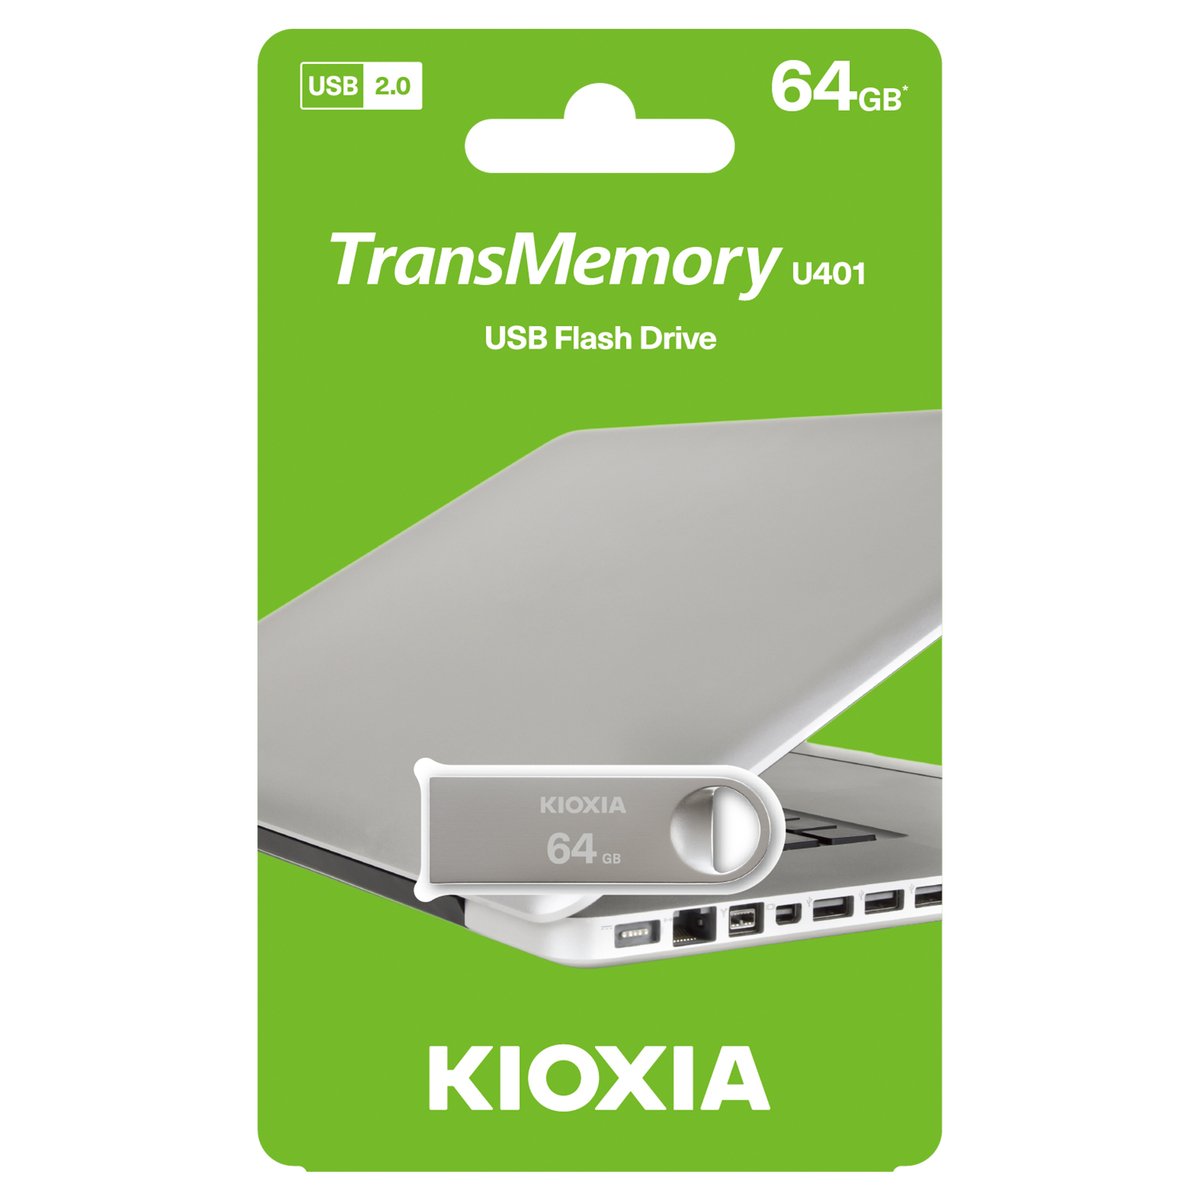 KIOXIA LU401S064GG4 64GB USB 2.0 Flash Drive